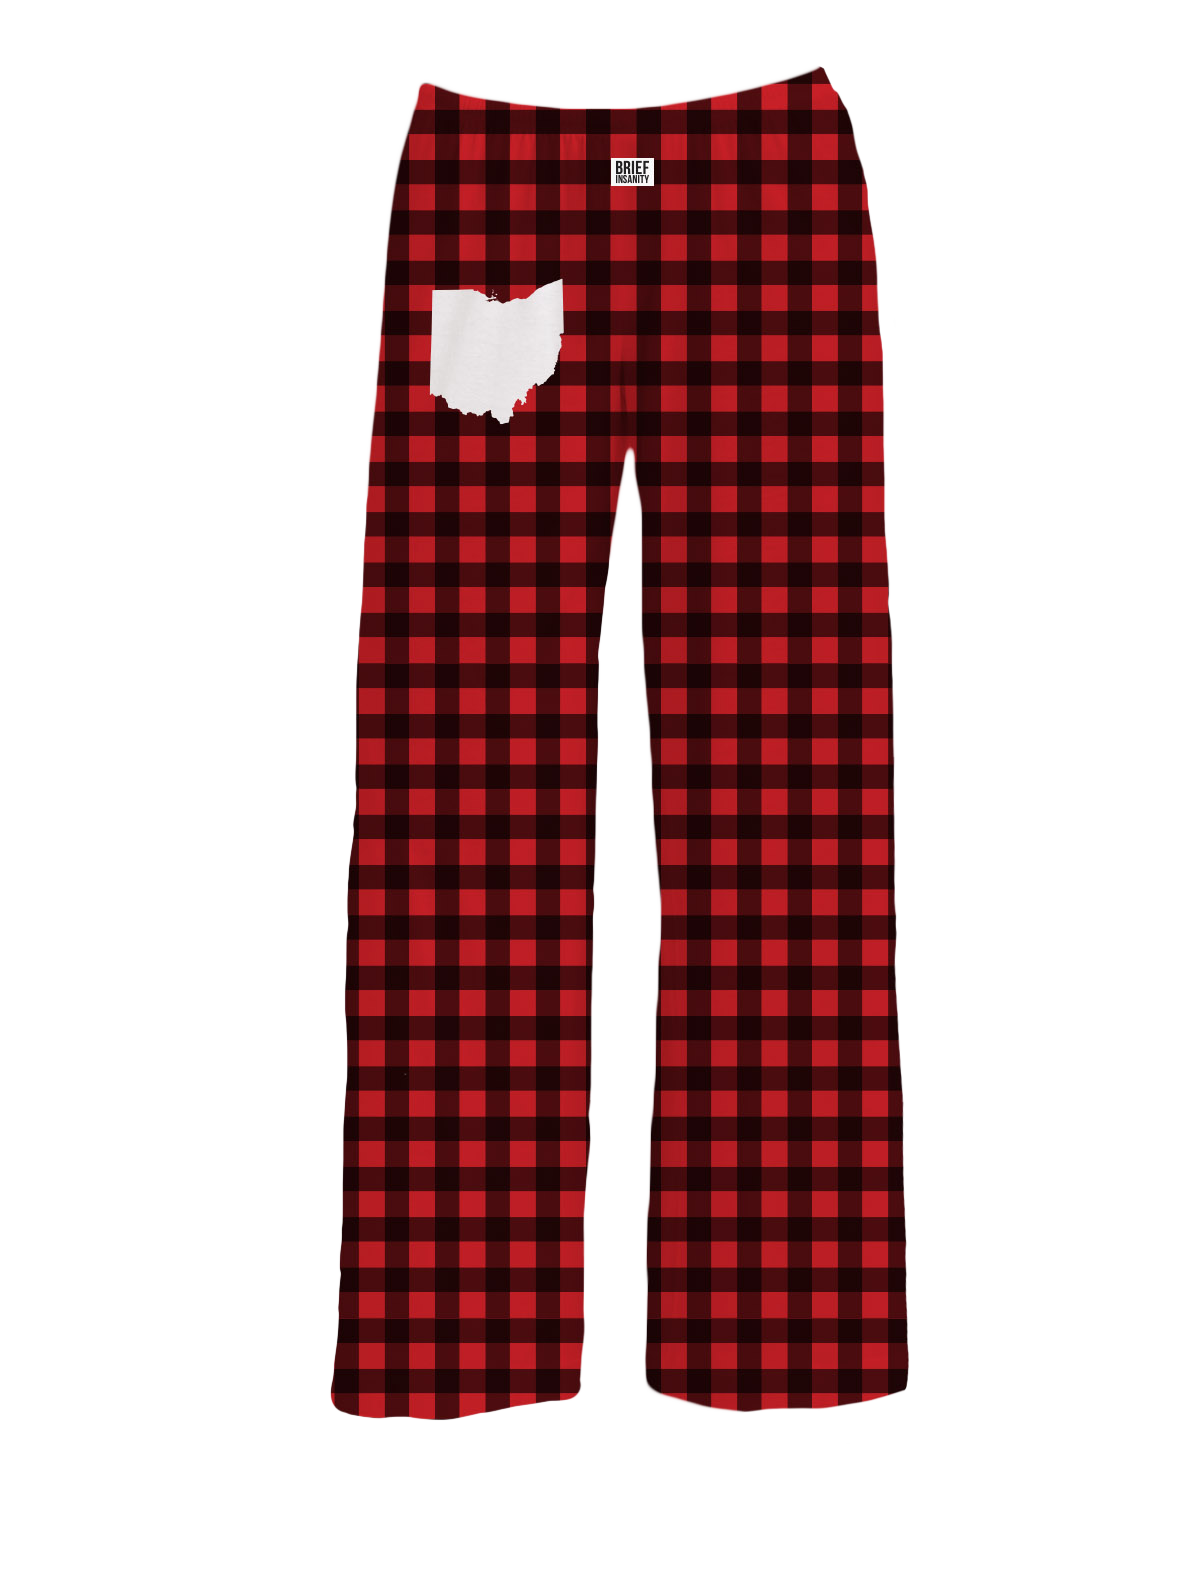 BRIEF INSANITY Ohio Red Buffalo Plaid Pajama Pants